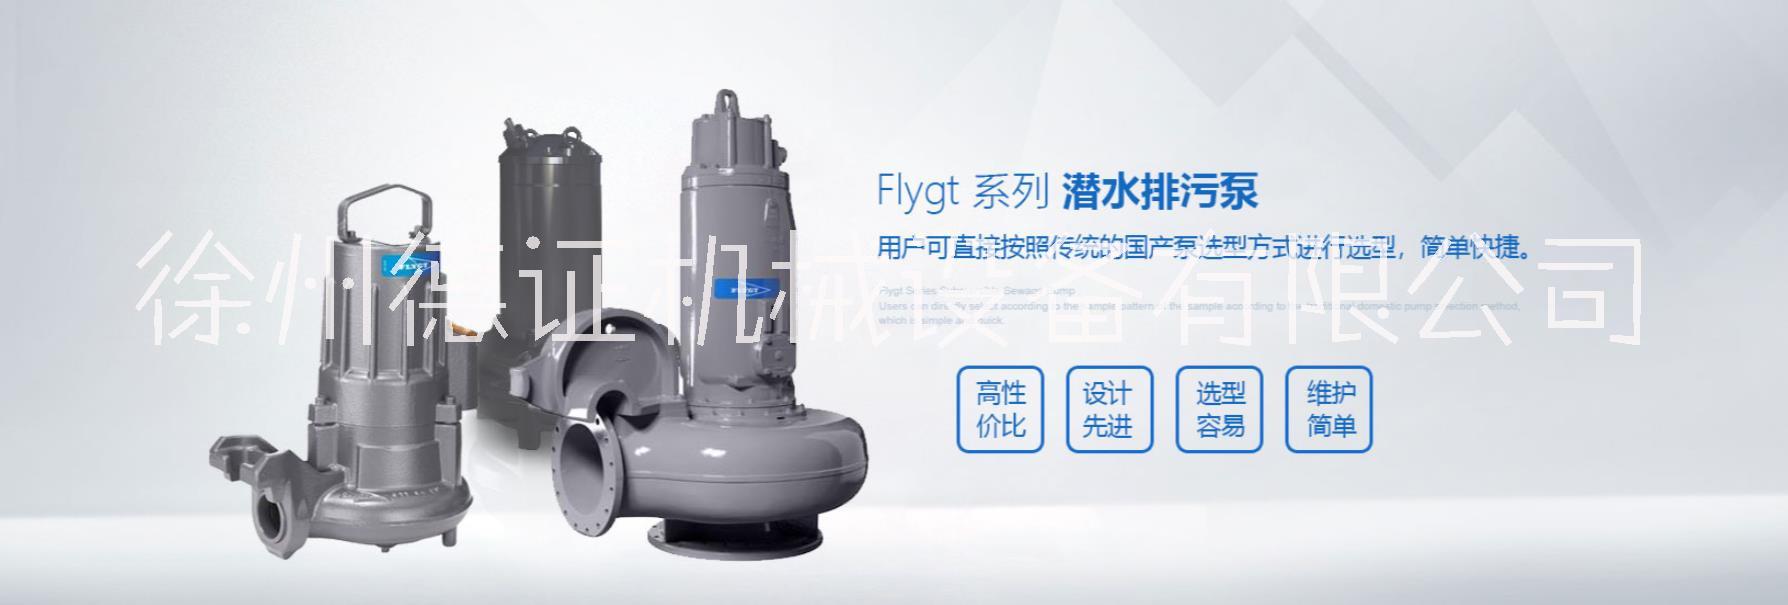 飞力潜水排污泵FLYGT大促销、飞力潜水排污泵FLYGT大优惠